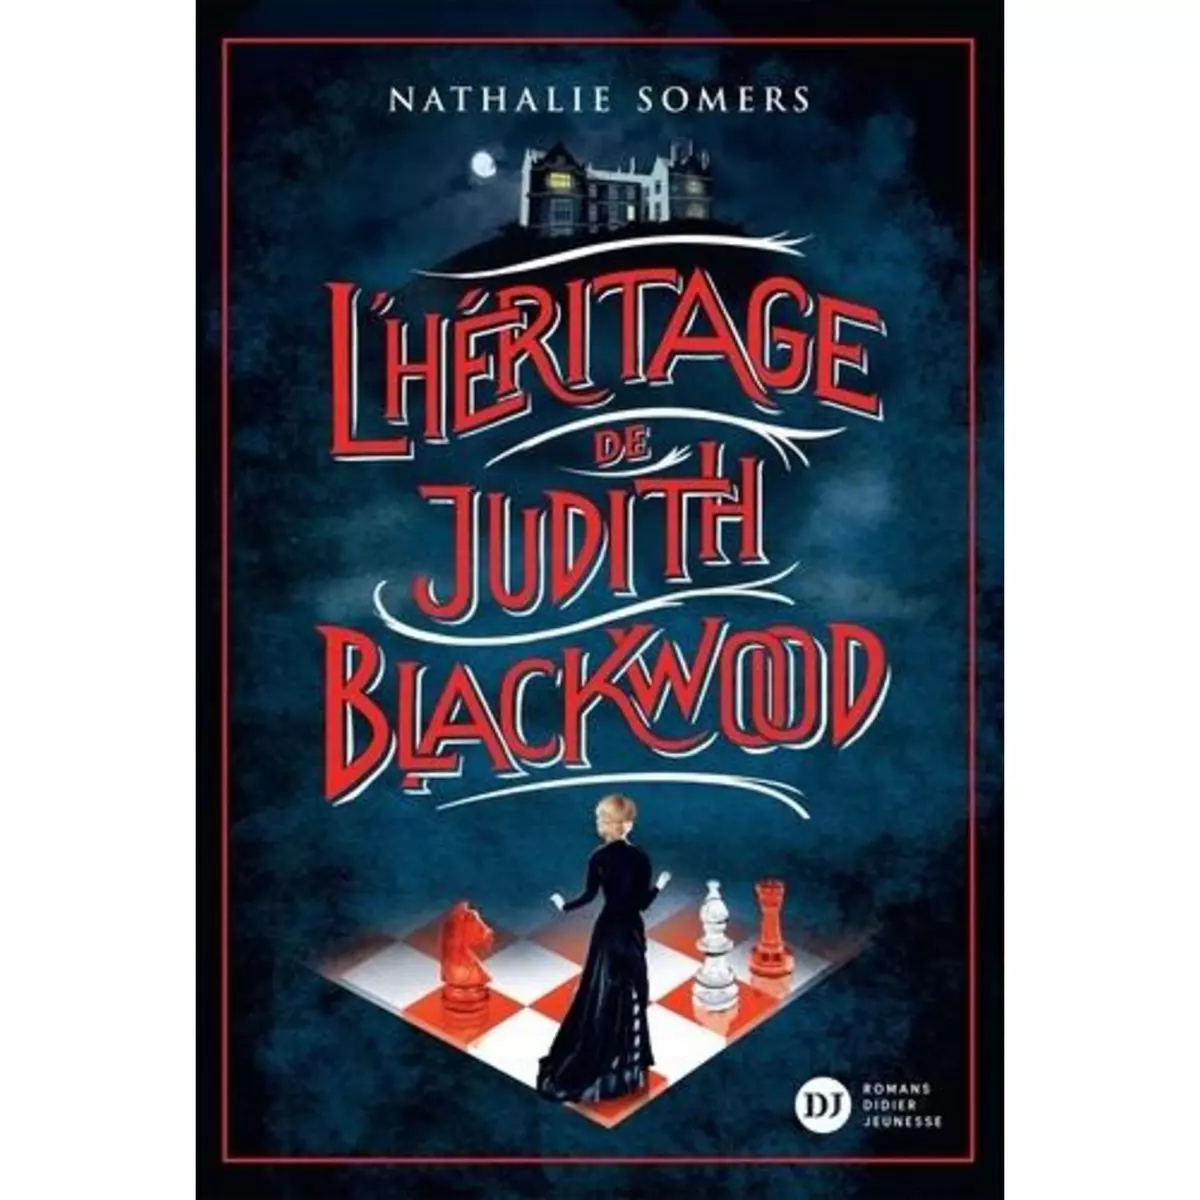  L'HERITAGE DE JUDITH BLACKWOOD, Somers Nathalie